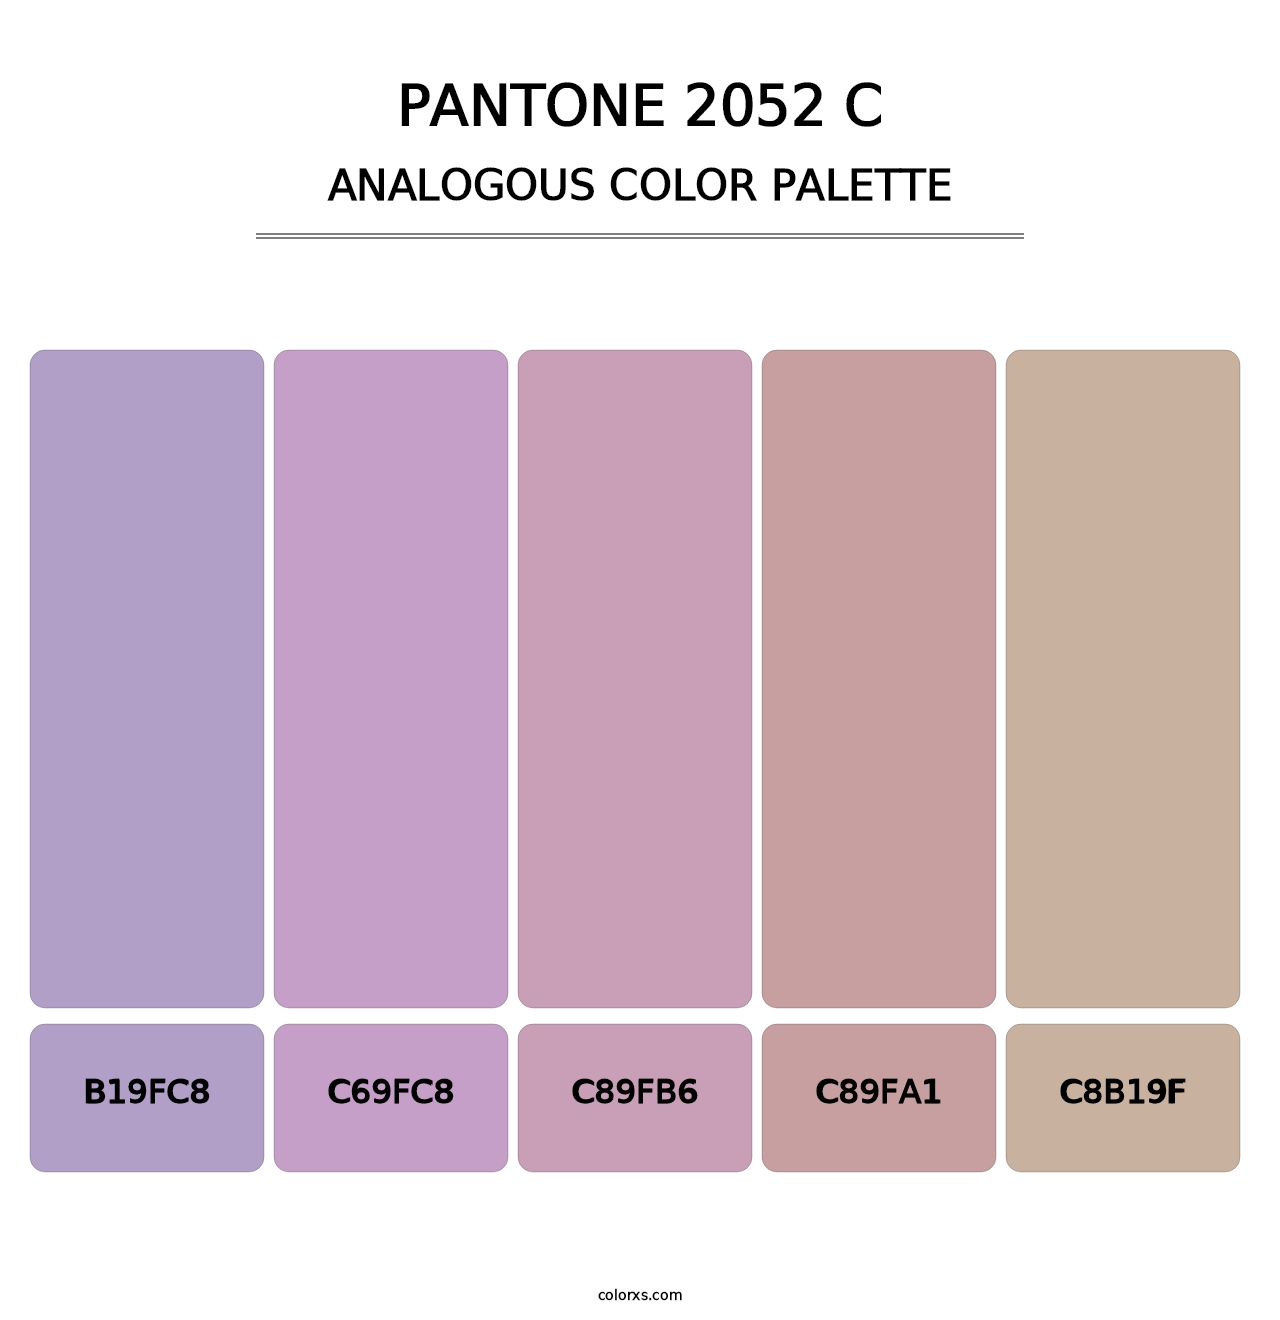 PANTONE 2052 C - Analogous Color Palette